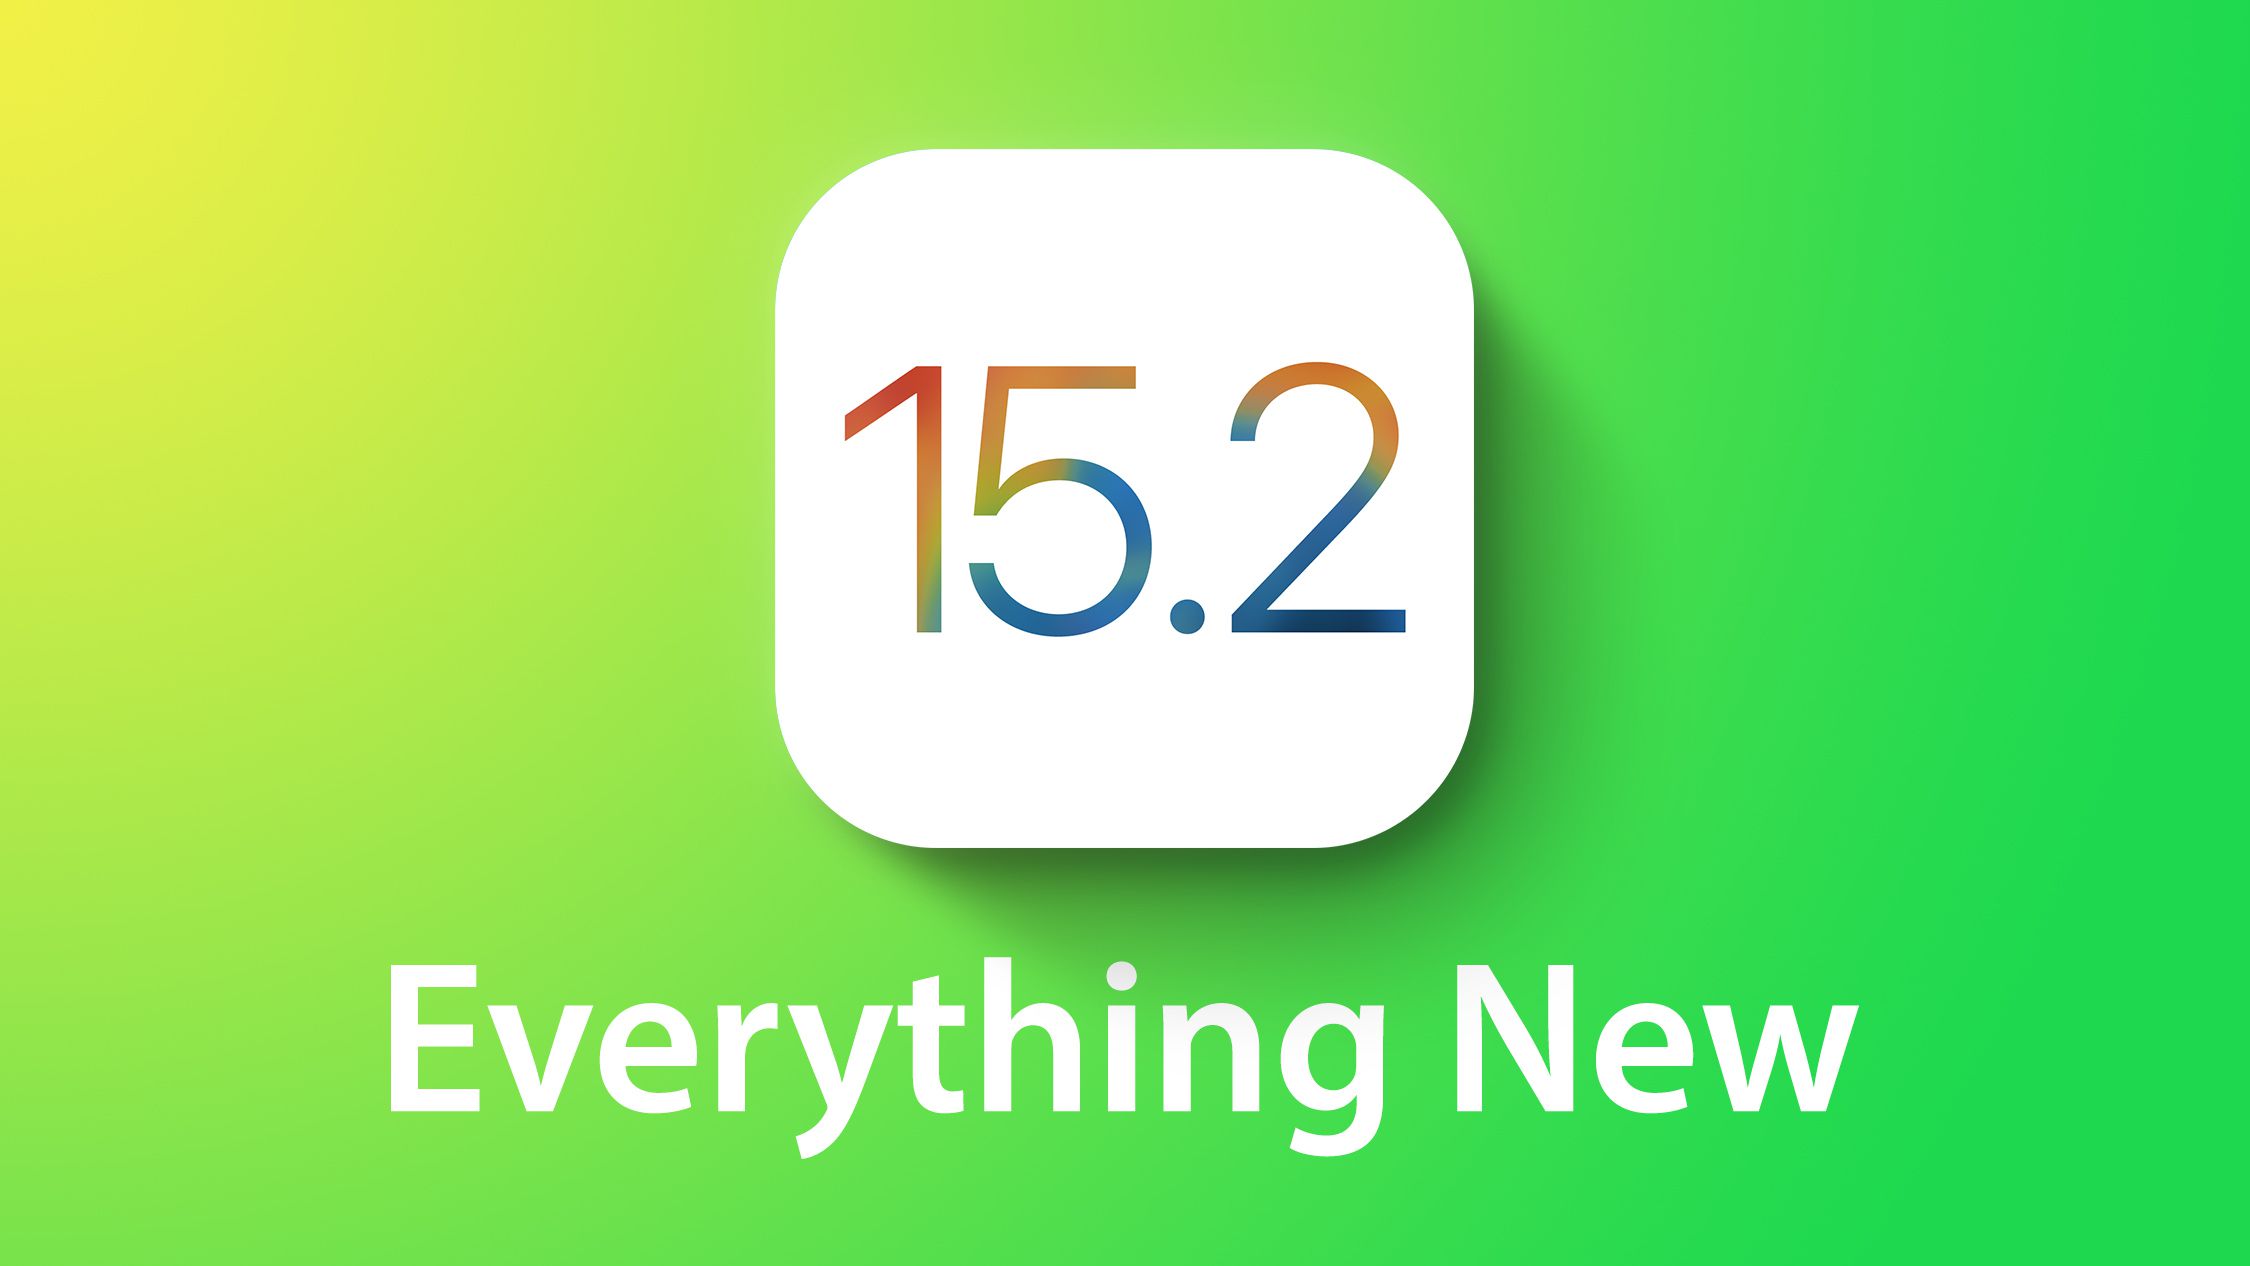 3 Fitur terbaru versi beta iOS 15.2, lindungi anak dari konten negatif